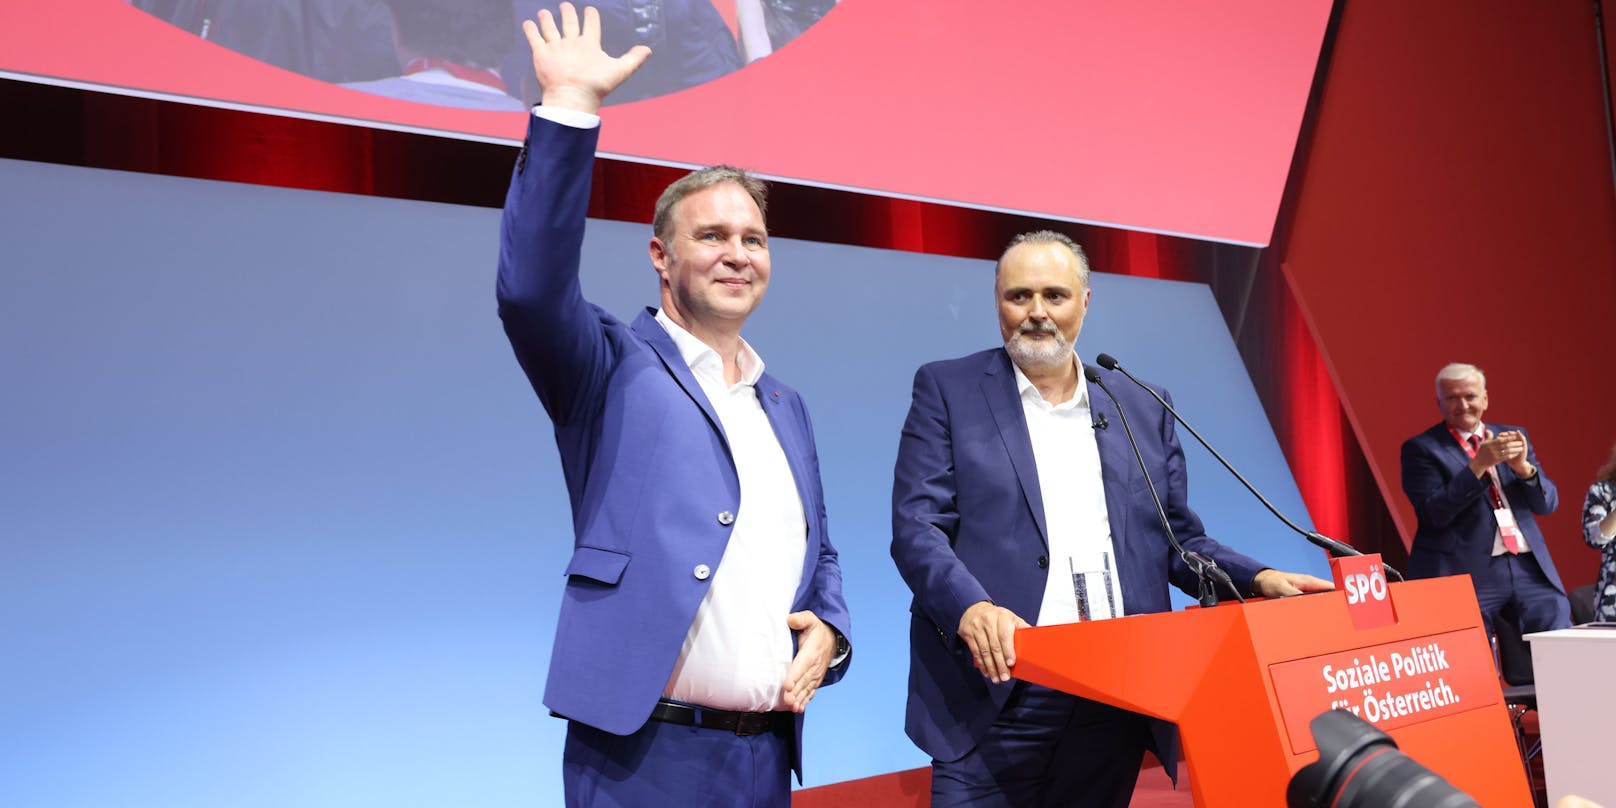 Hans Peter Doskozil feiert seine Wahl zum SPÖ-Parteichef am Sonderparteitag.